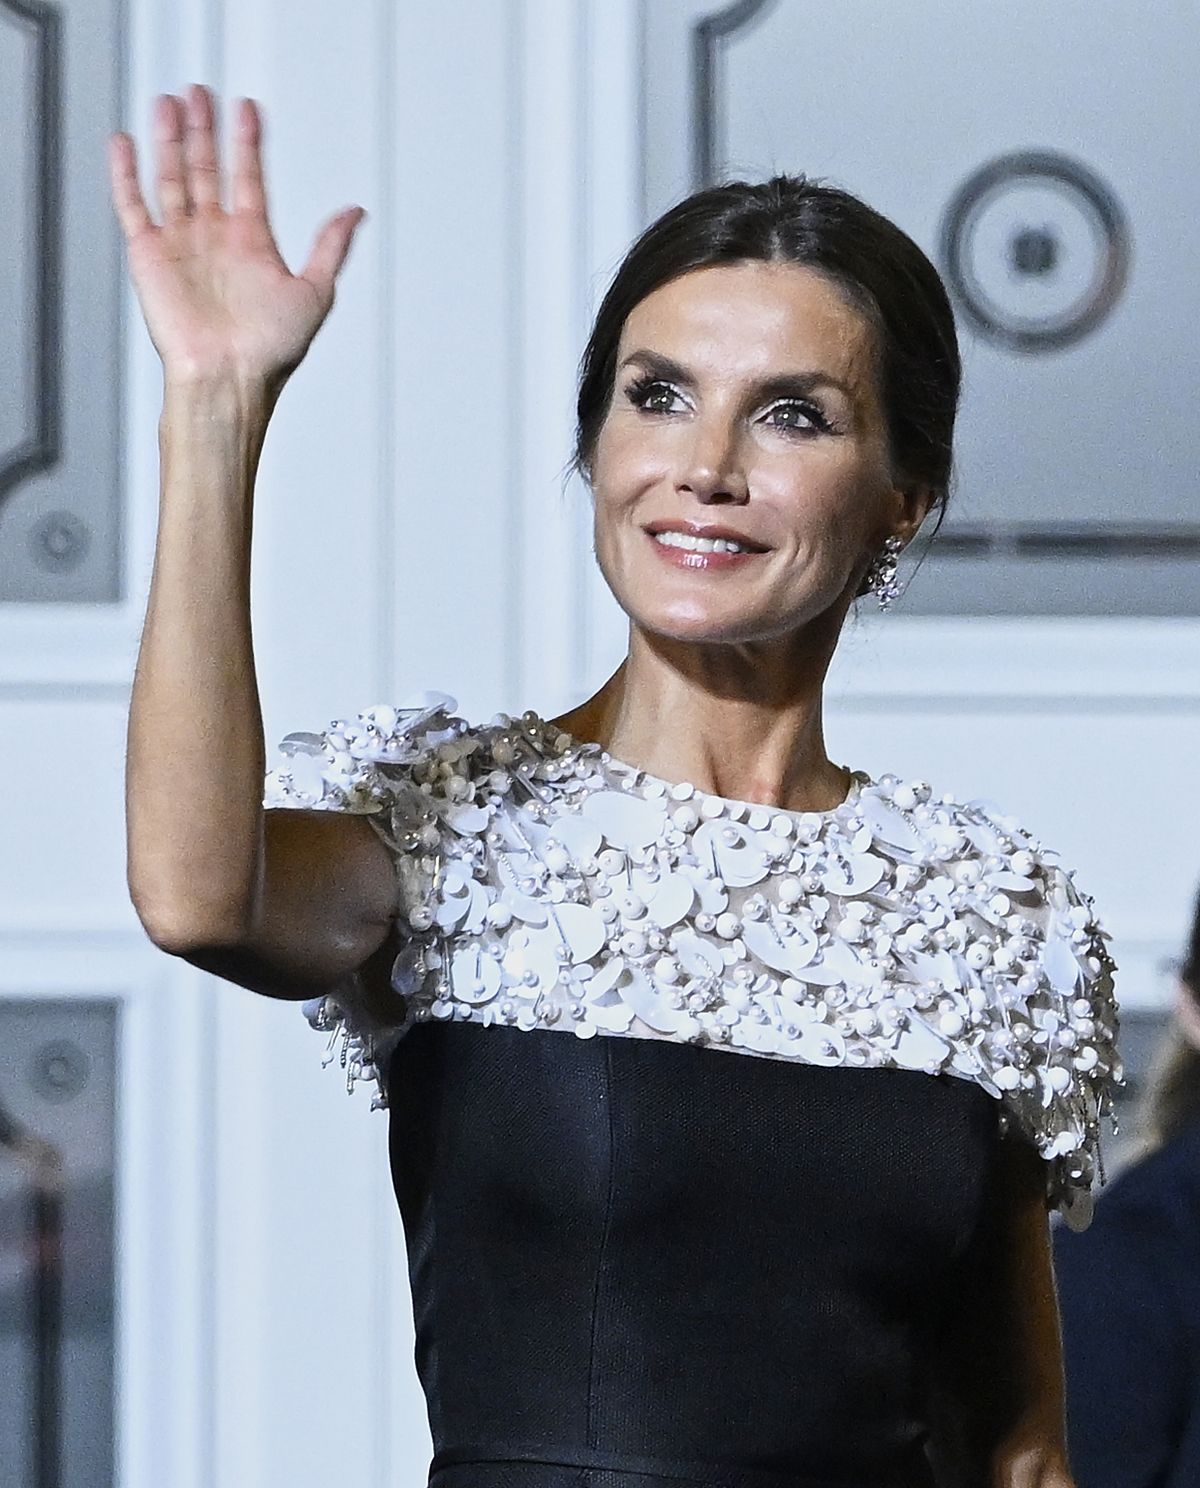 expedido Dato semáforo La reina Letizia y el vestido blanco y negro de Carolina Herrera